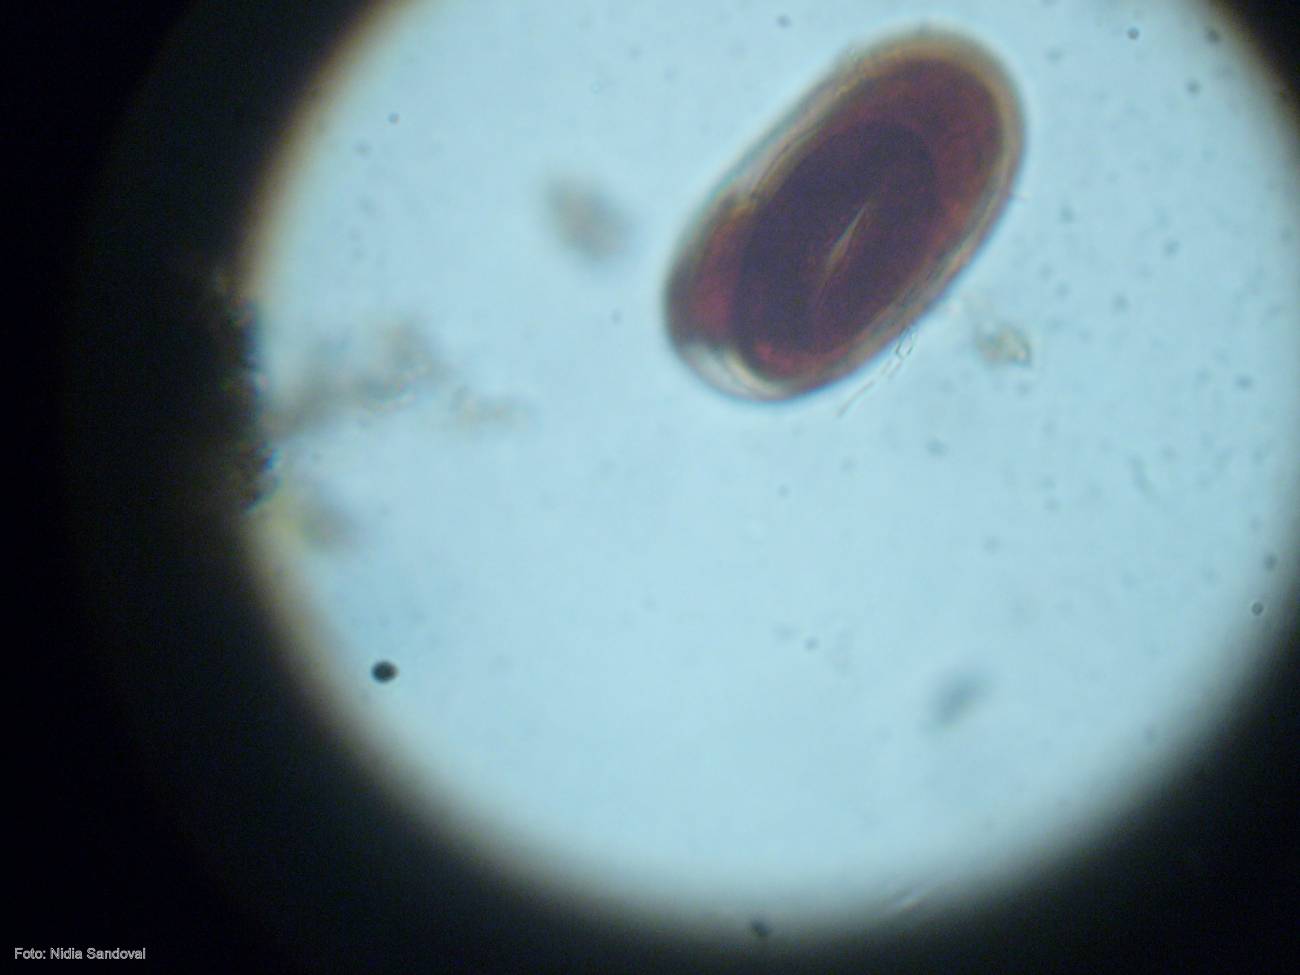 Tipo de helmintos procedente de las muestras recogidas en Panamá visto al microscopio.